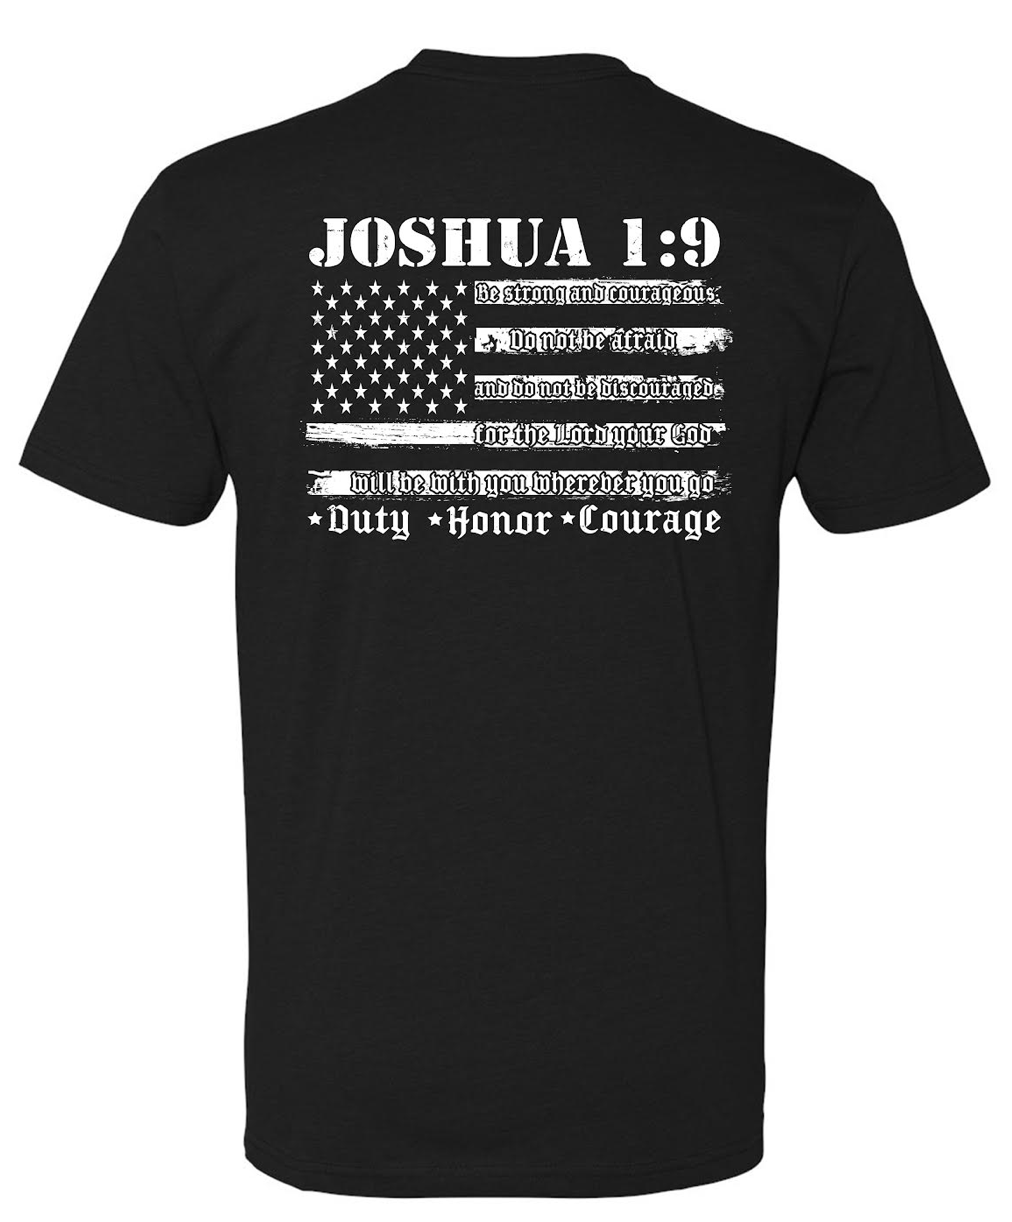 Joshua 1:9 OG Tee